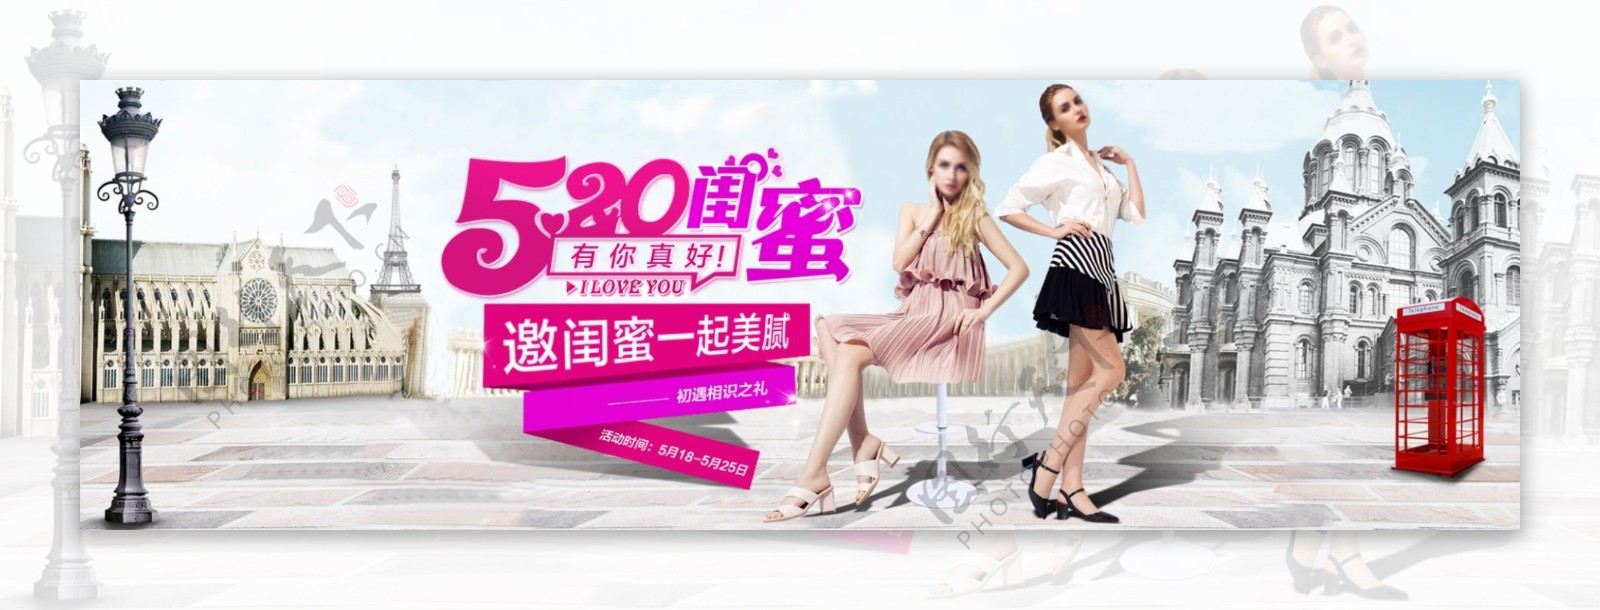 淘宝520女装促销海报设计PSD素材